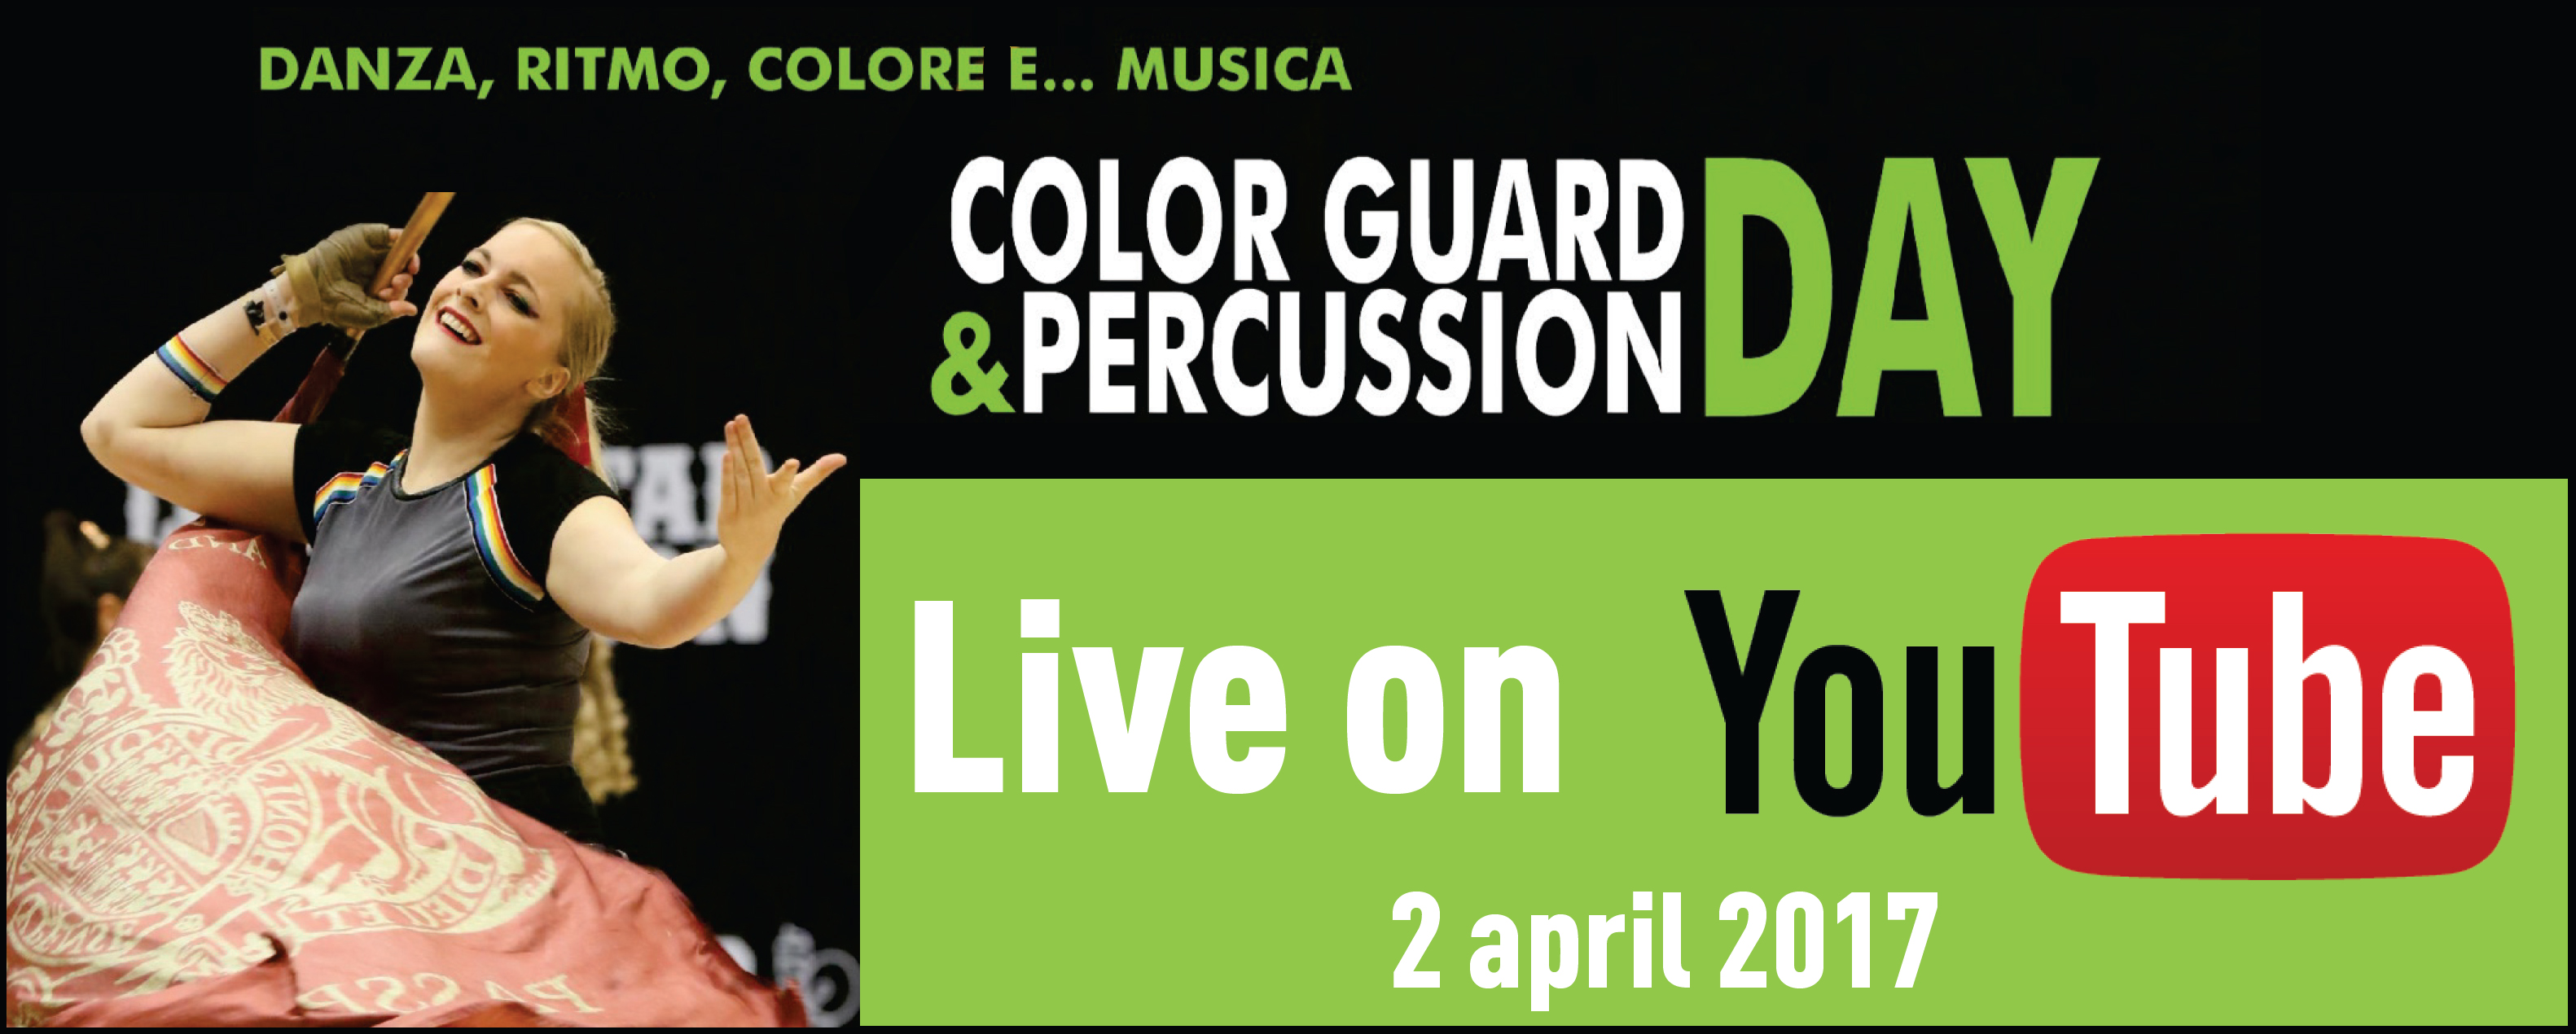 Color Guard & Percusison Day 2017 - Diretta YouTube e FaceBook